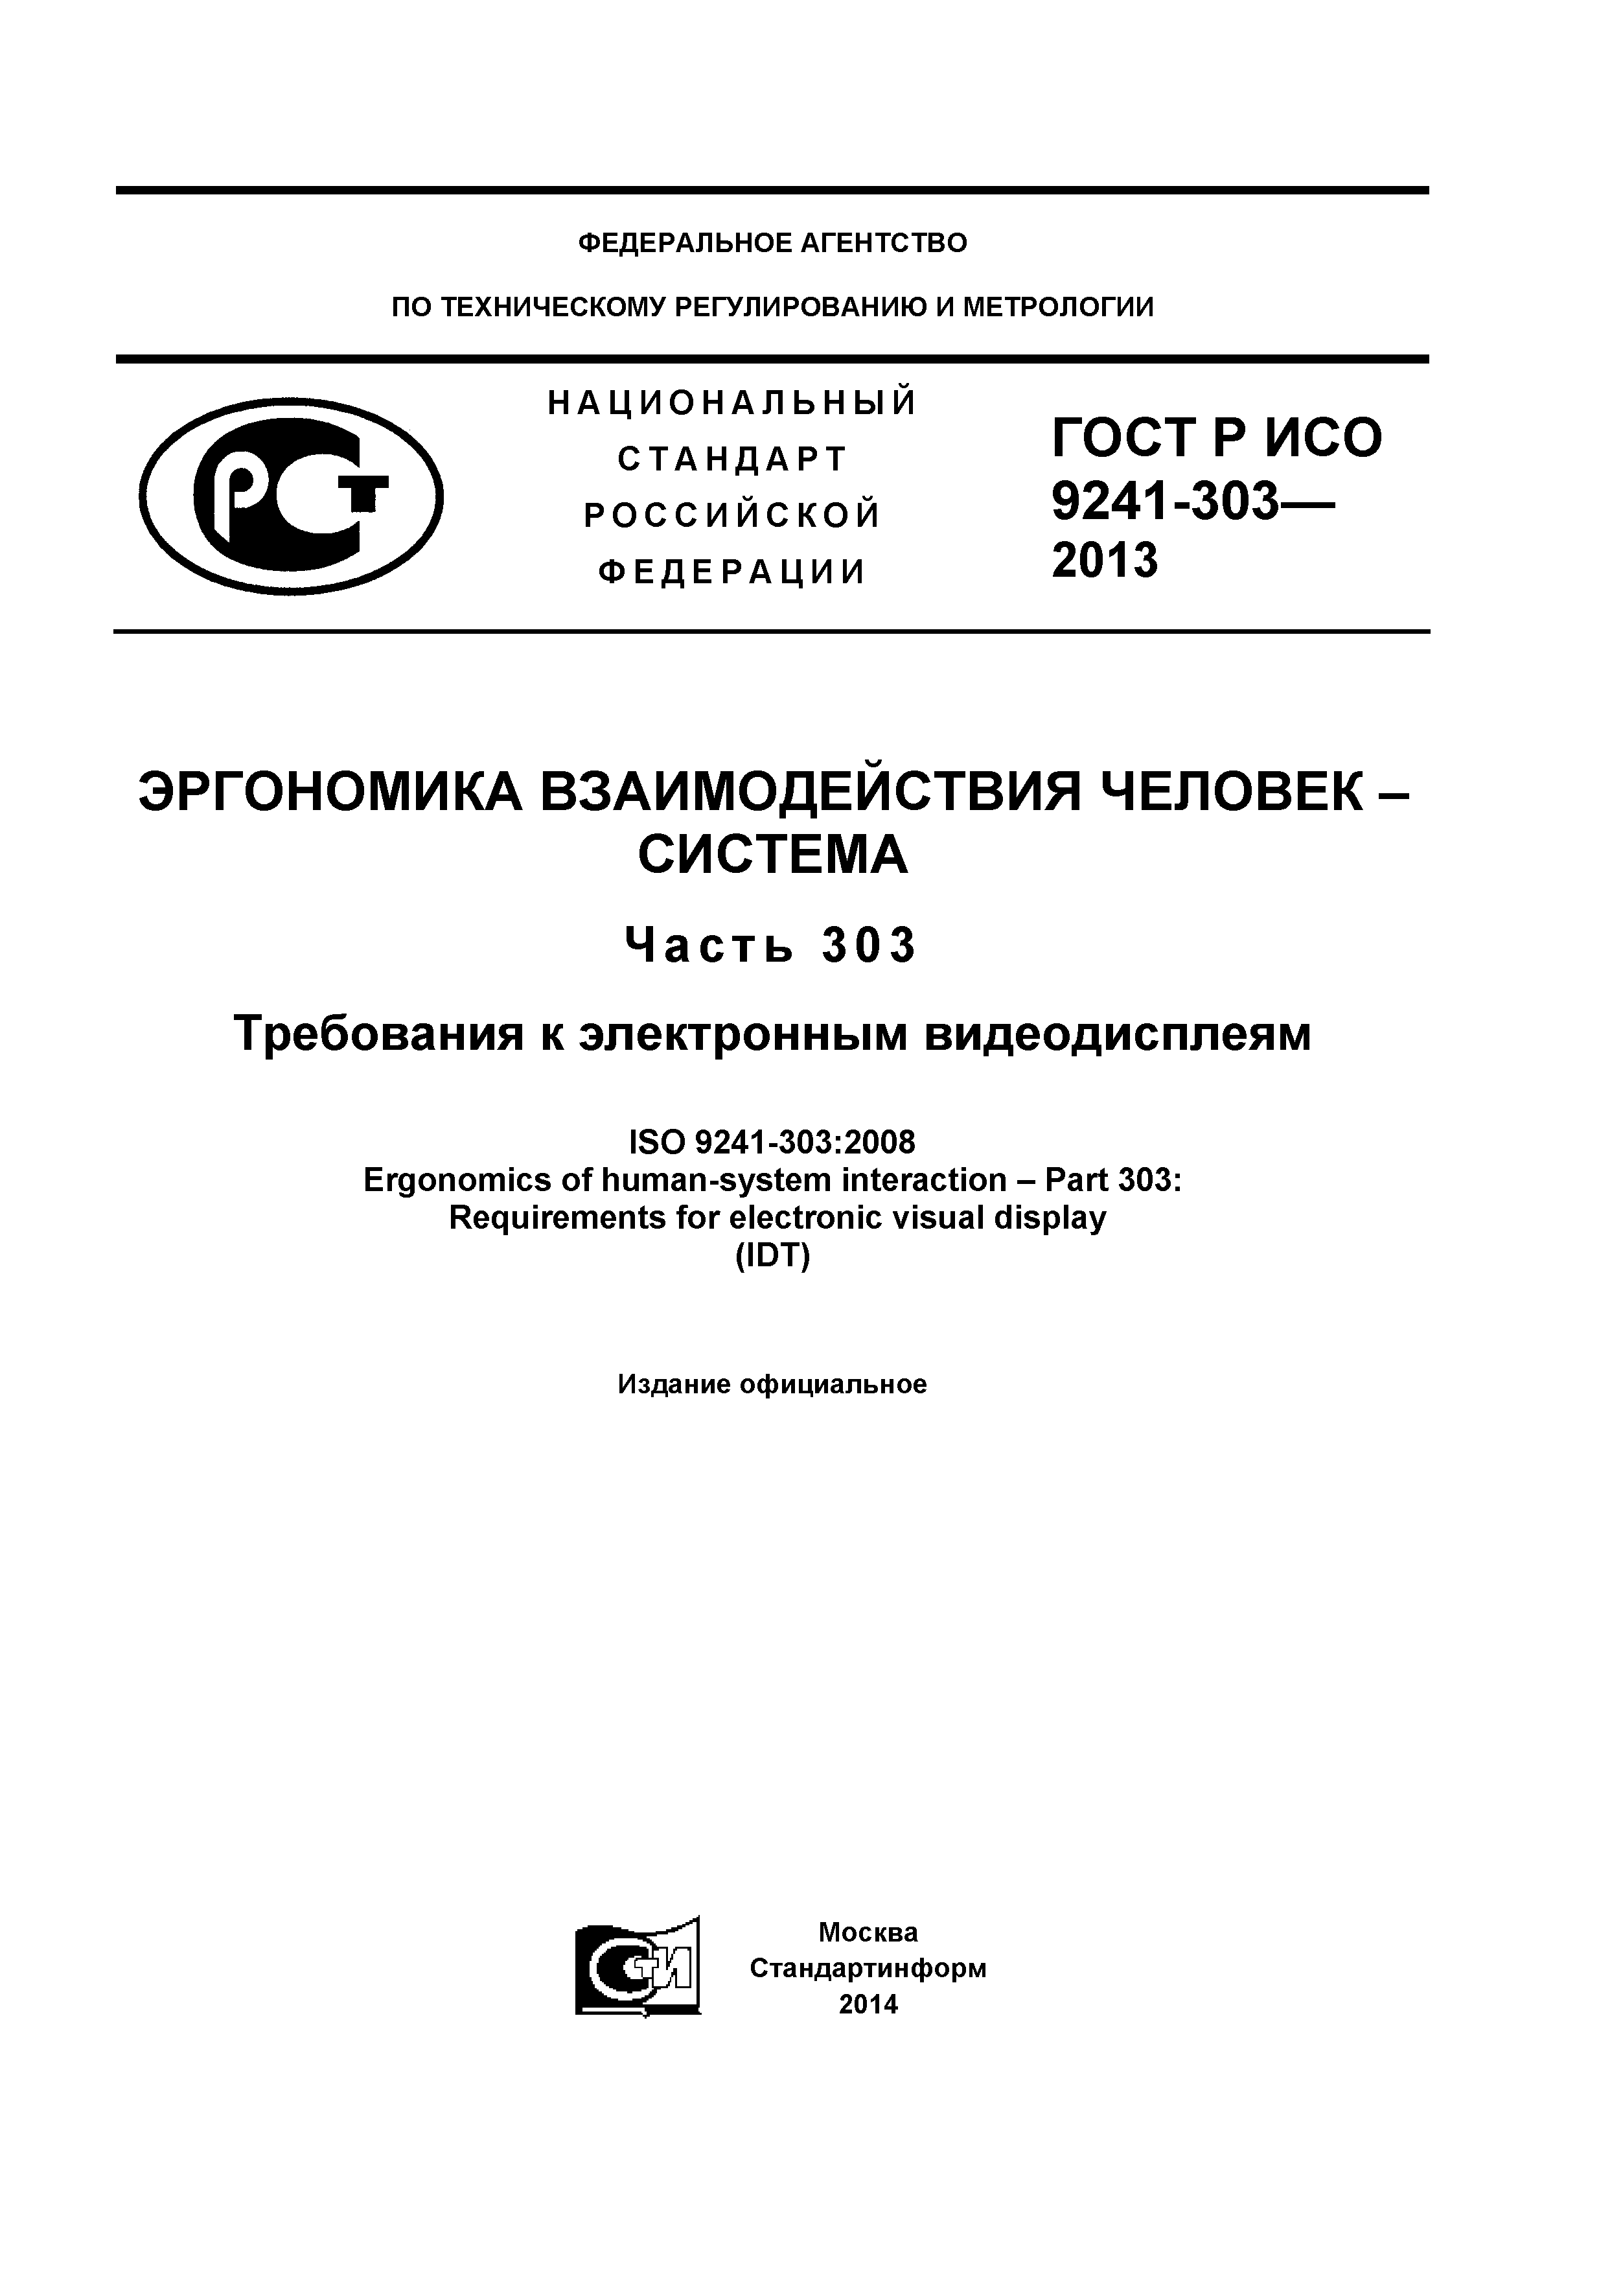 ГОСТ Р ИСО 9241-303-2012